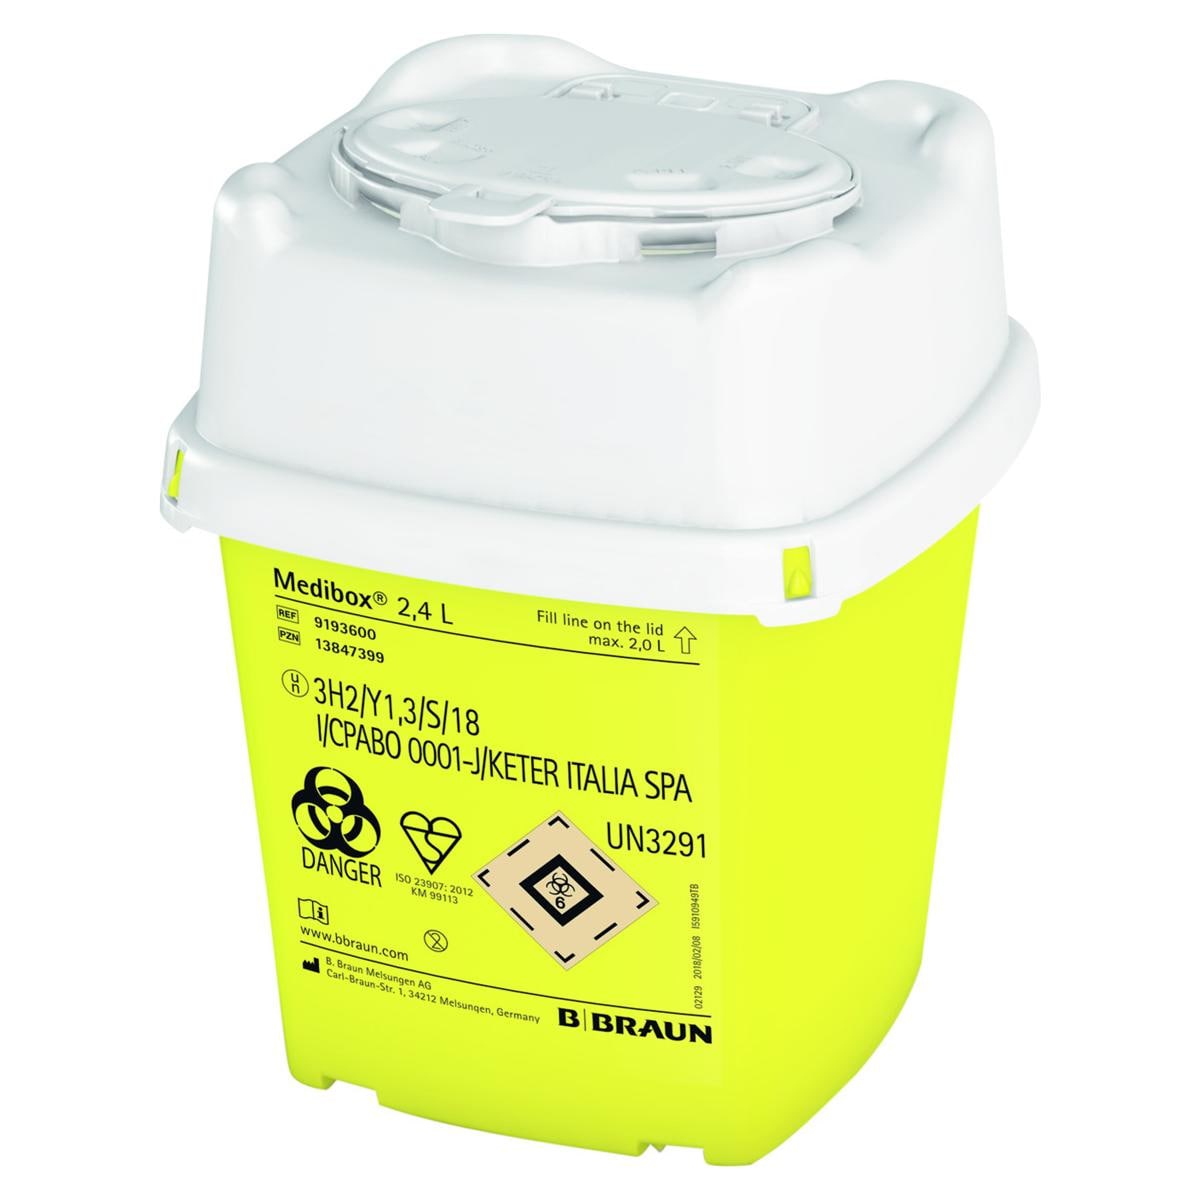 Medibox Entsorgungsbehälter - Größe 2,4 Liter, Packung 1 Stück